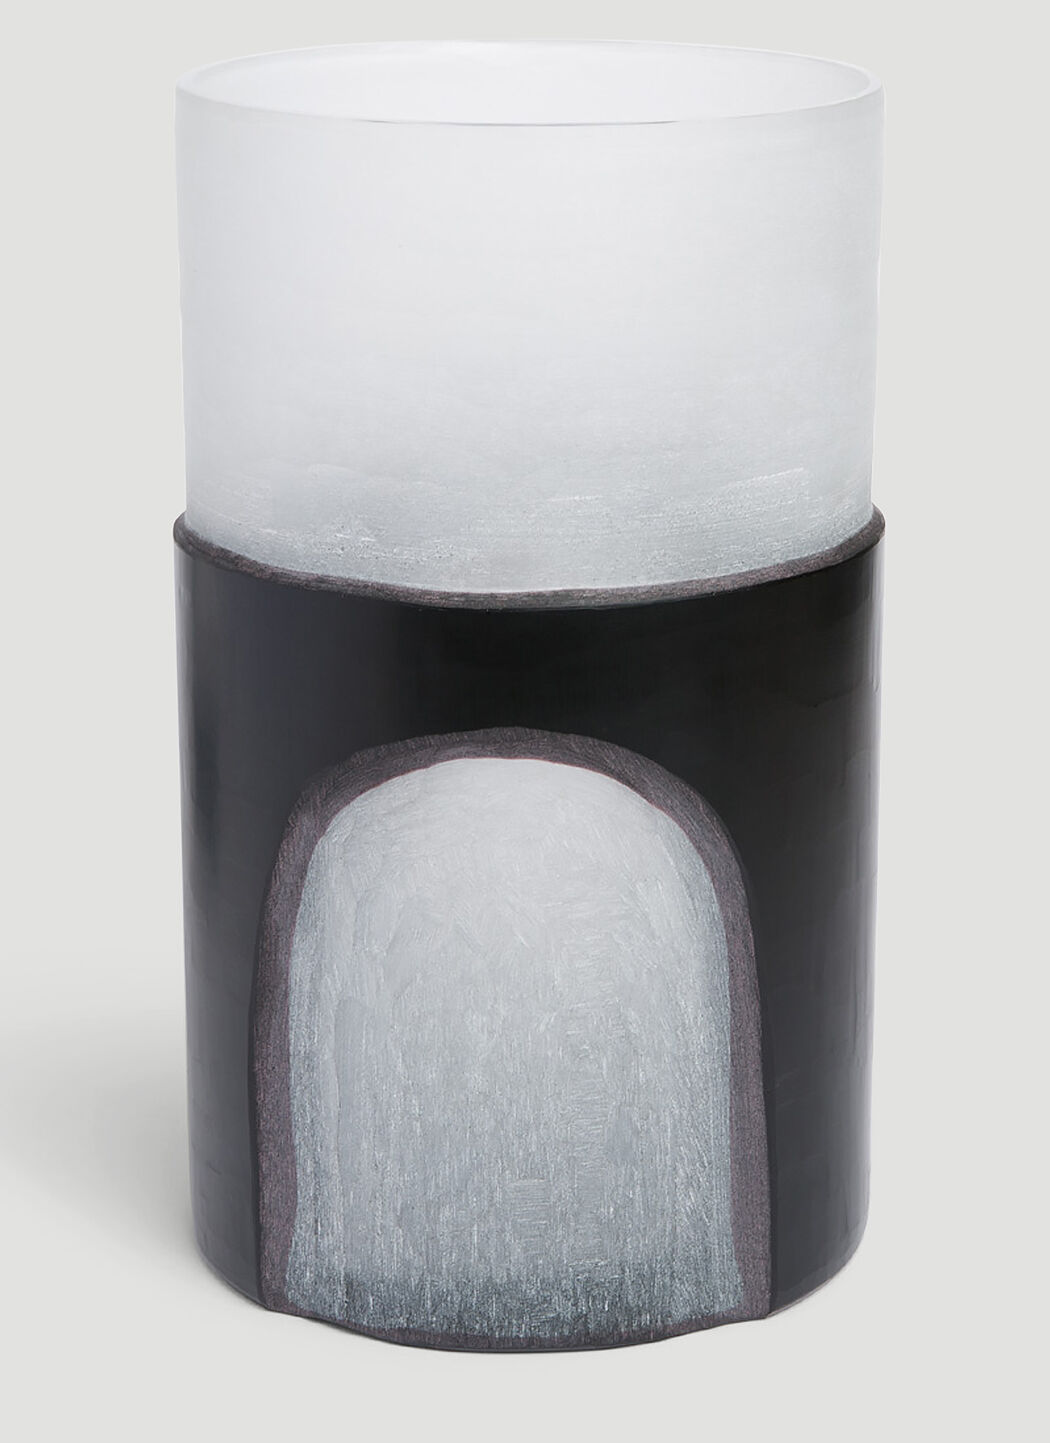 Marloe Marloe Medium Carved Vase 크림 rlo0351006